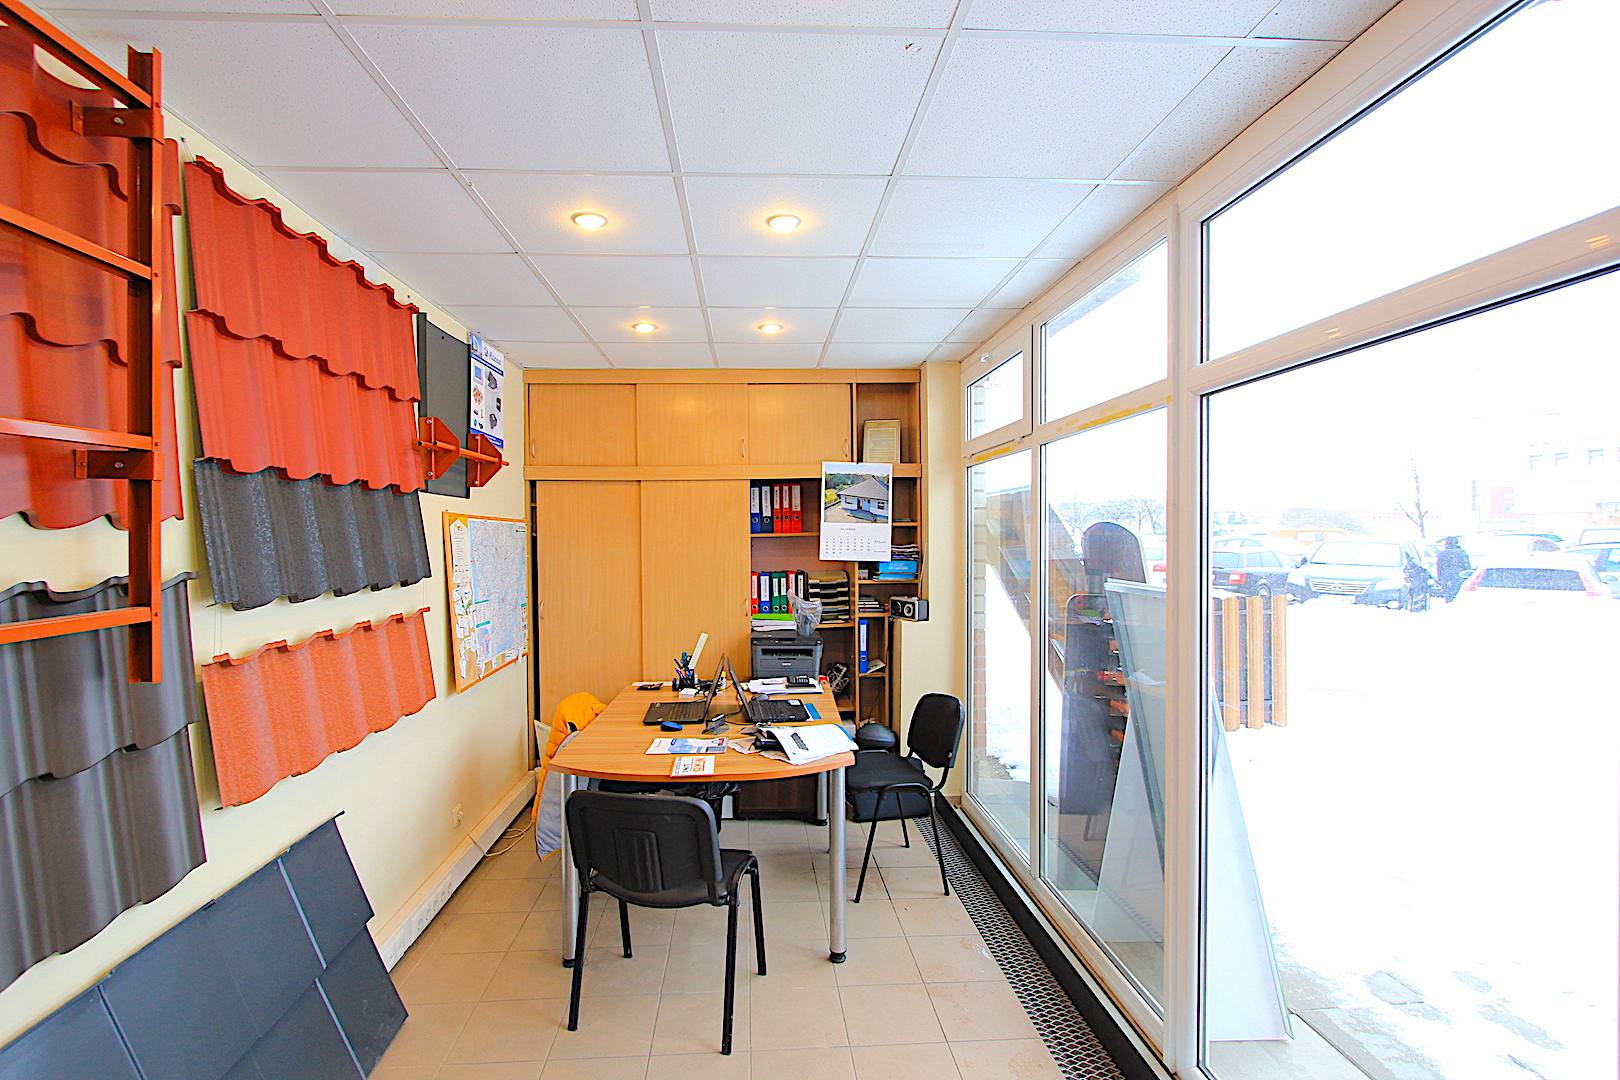 Išnuomojamos tvarkingos, šviesios 13 m² patalpos Draugystės multifunkciniame centre.